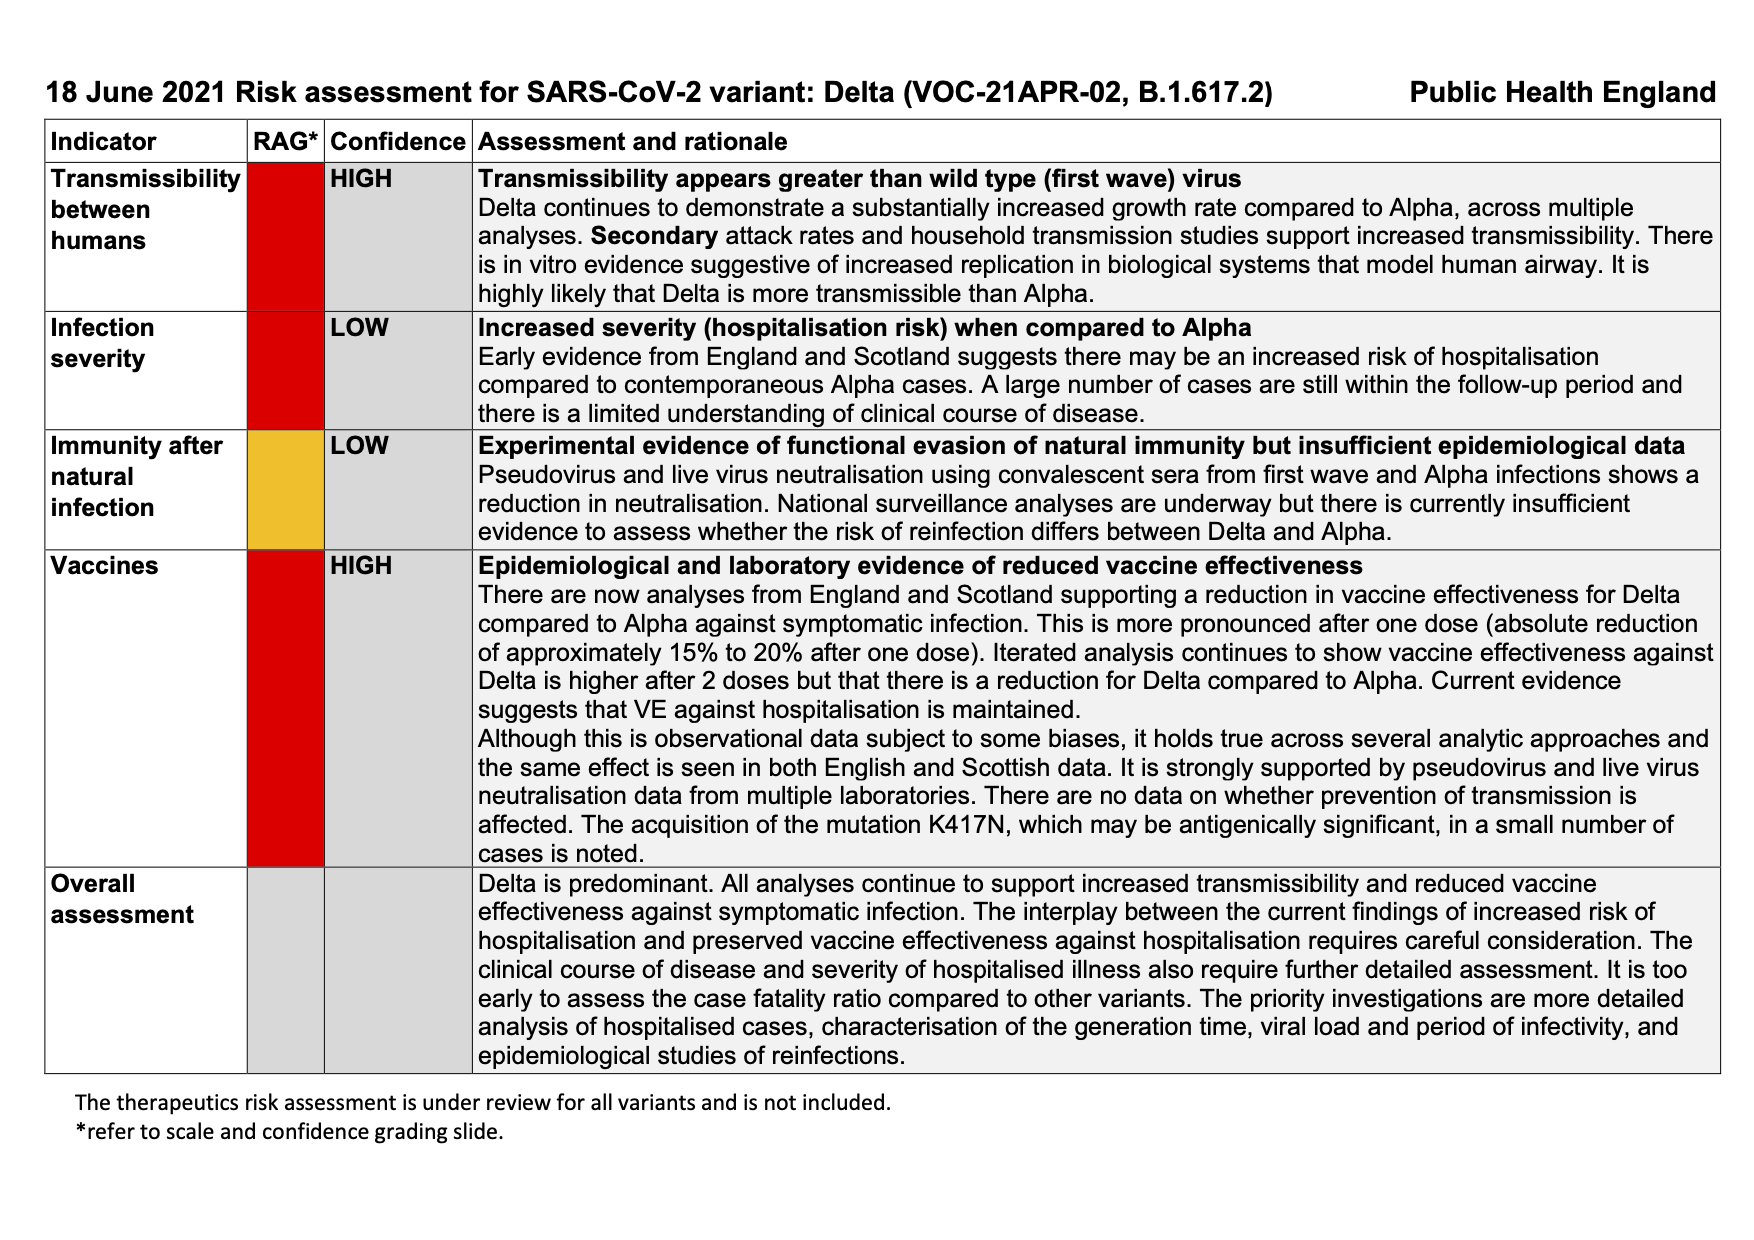 18 June 2021 Risk assessment for SARS CoV 2 variant DELTA